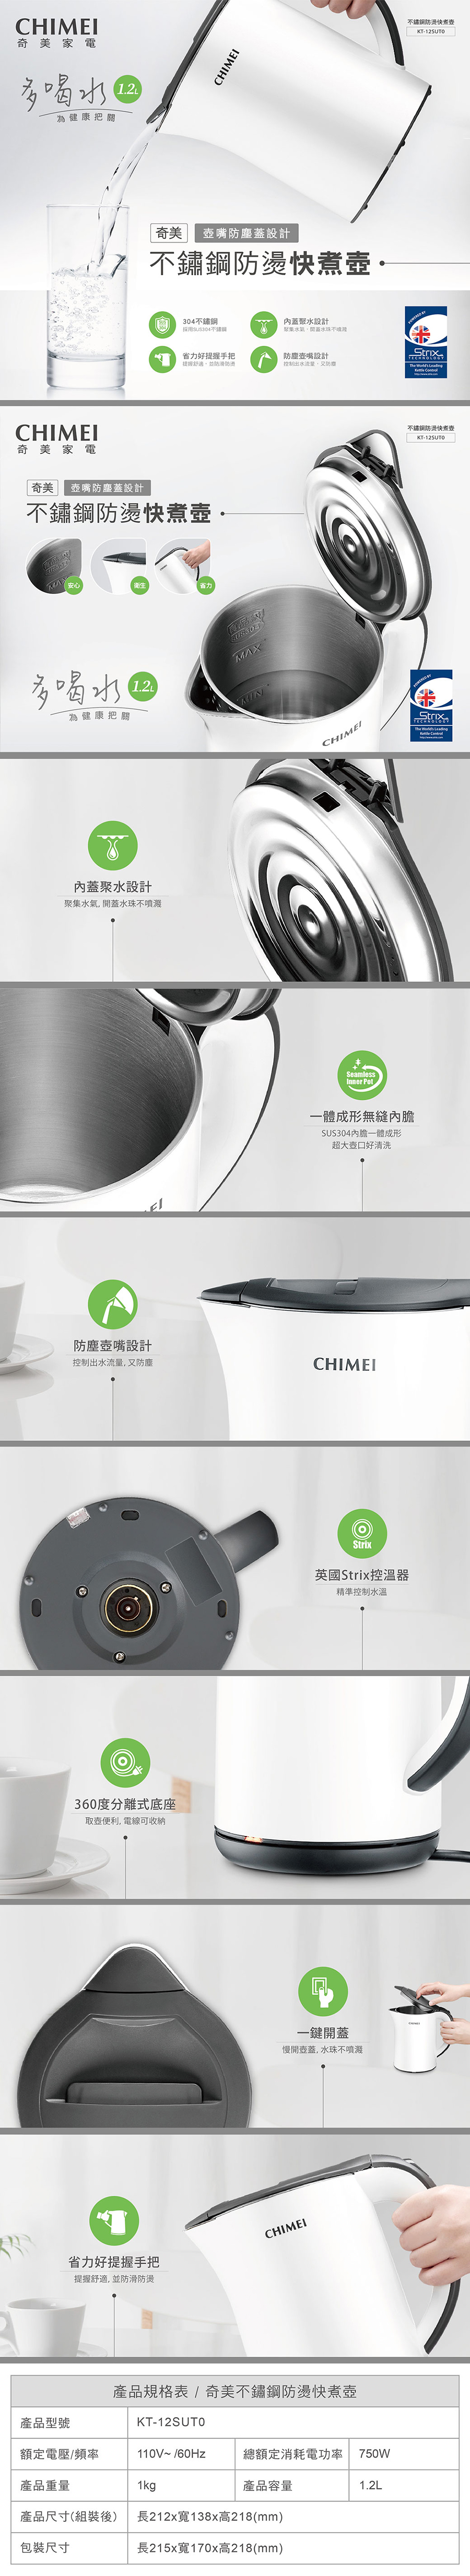 【CHIMEI奇美】1.2L不鏽鋼快煮壺(KT-12SUT0) 電水壺/雙層防燙